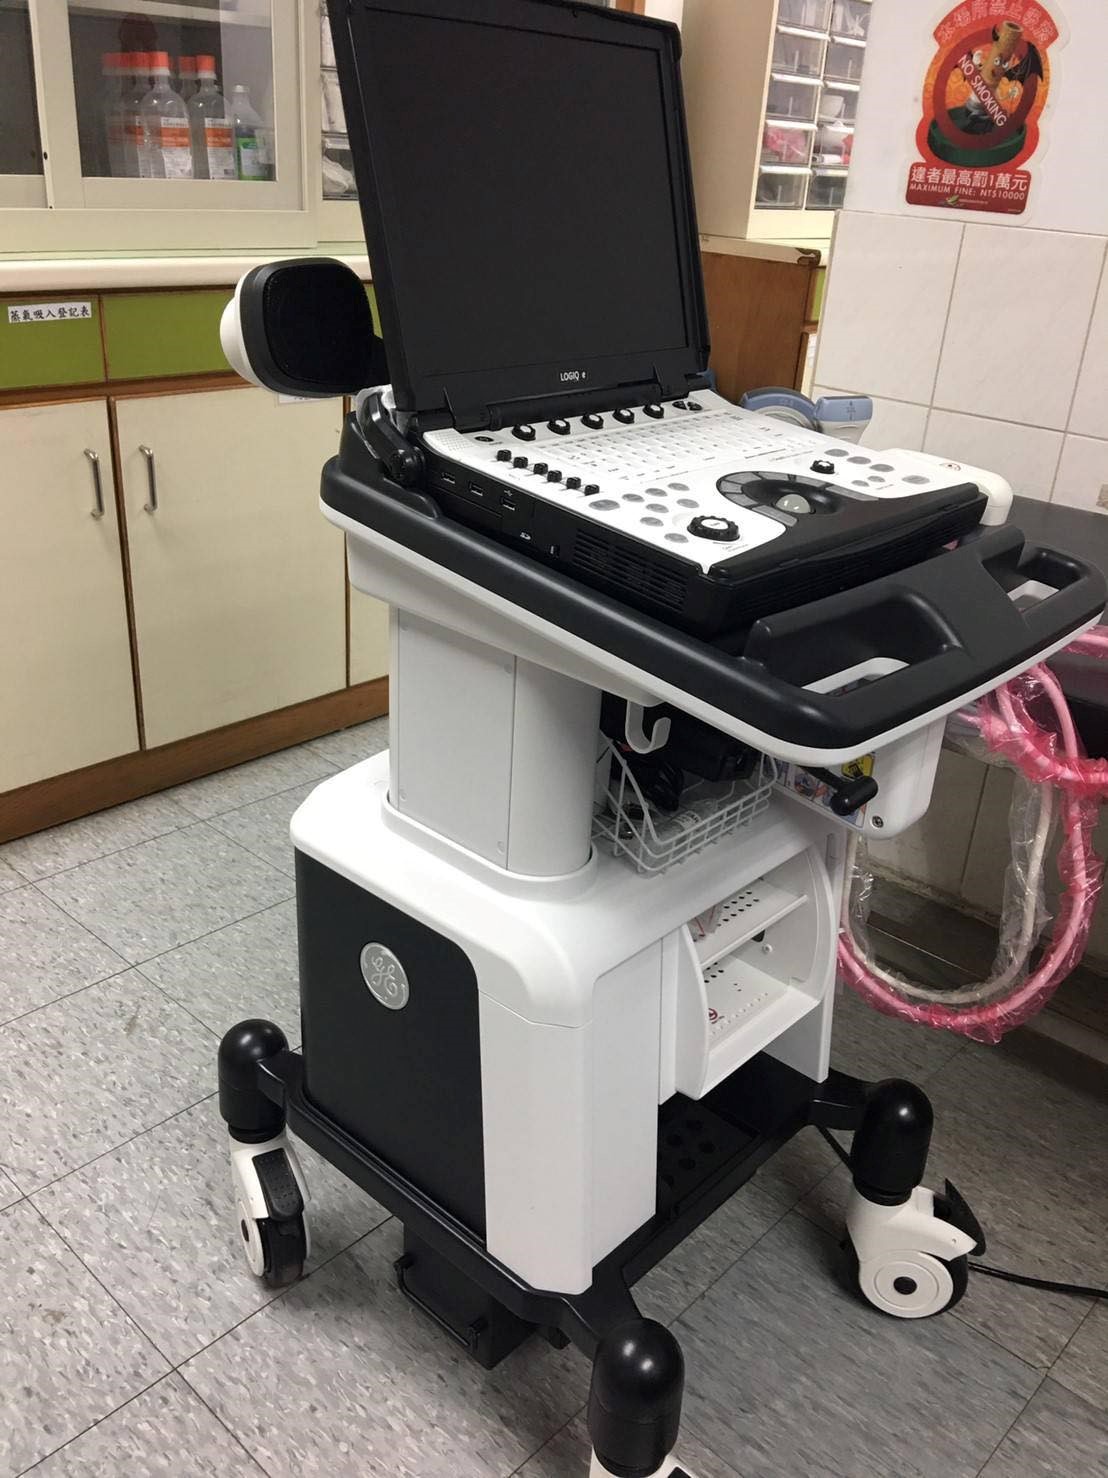 八德榮家醫務室提供超音波檢查服務